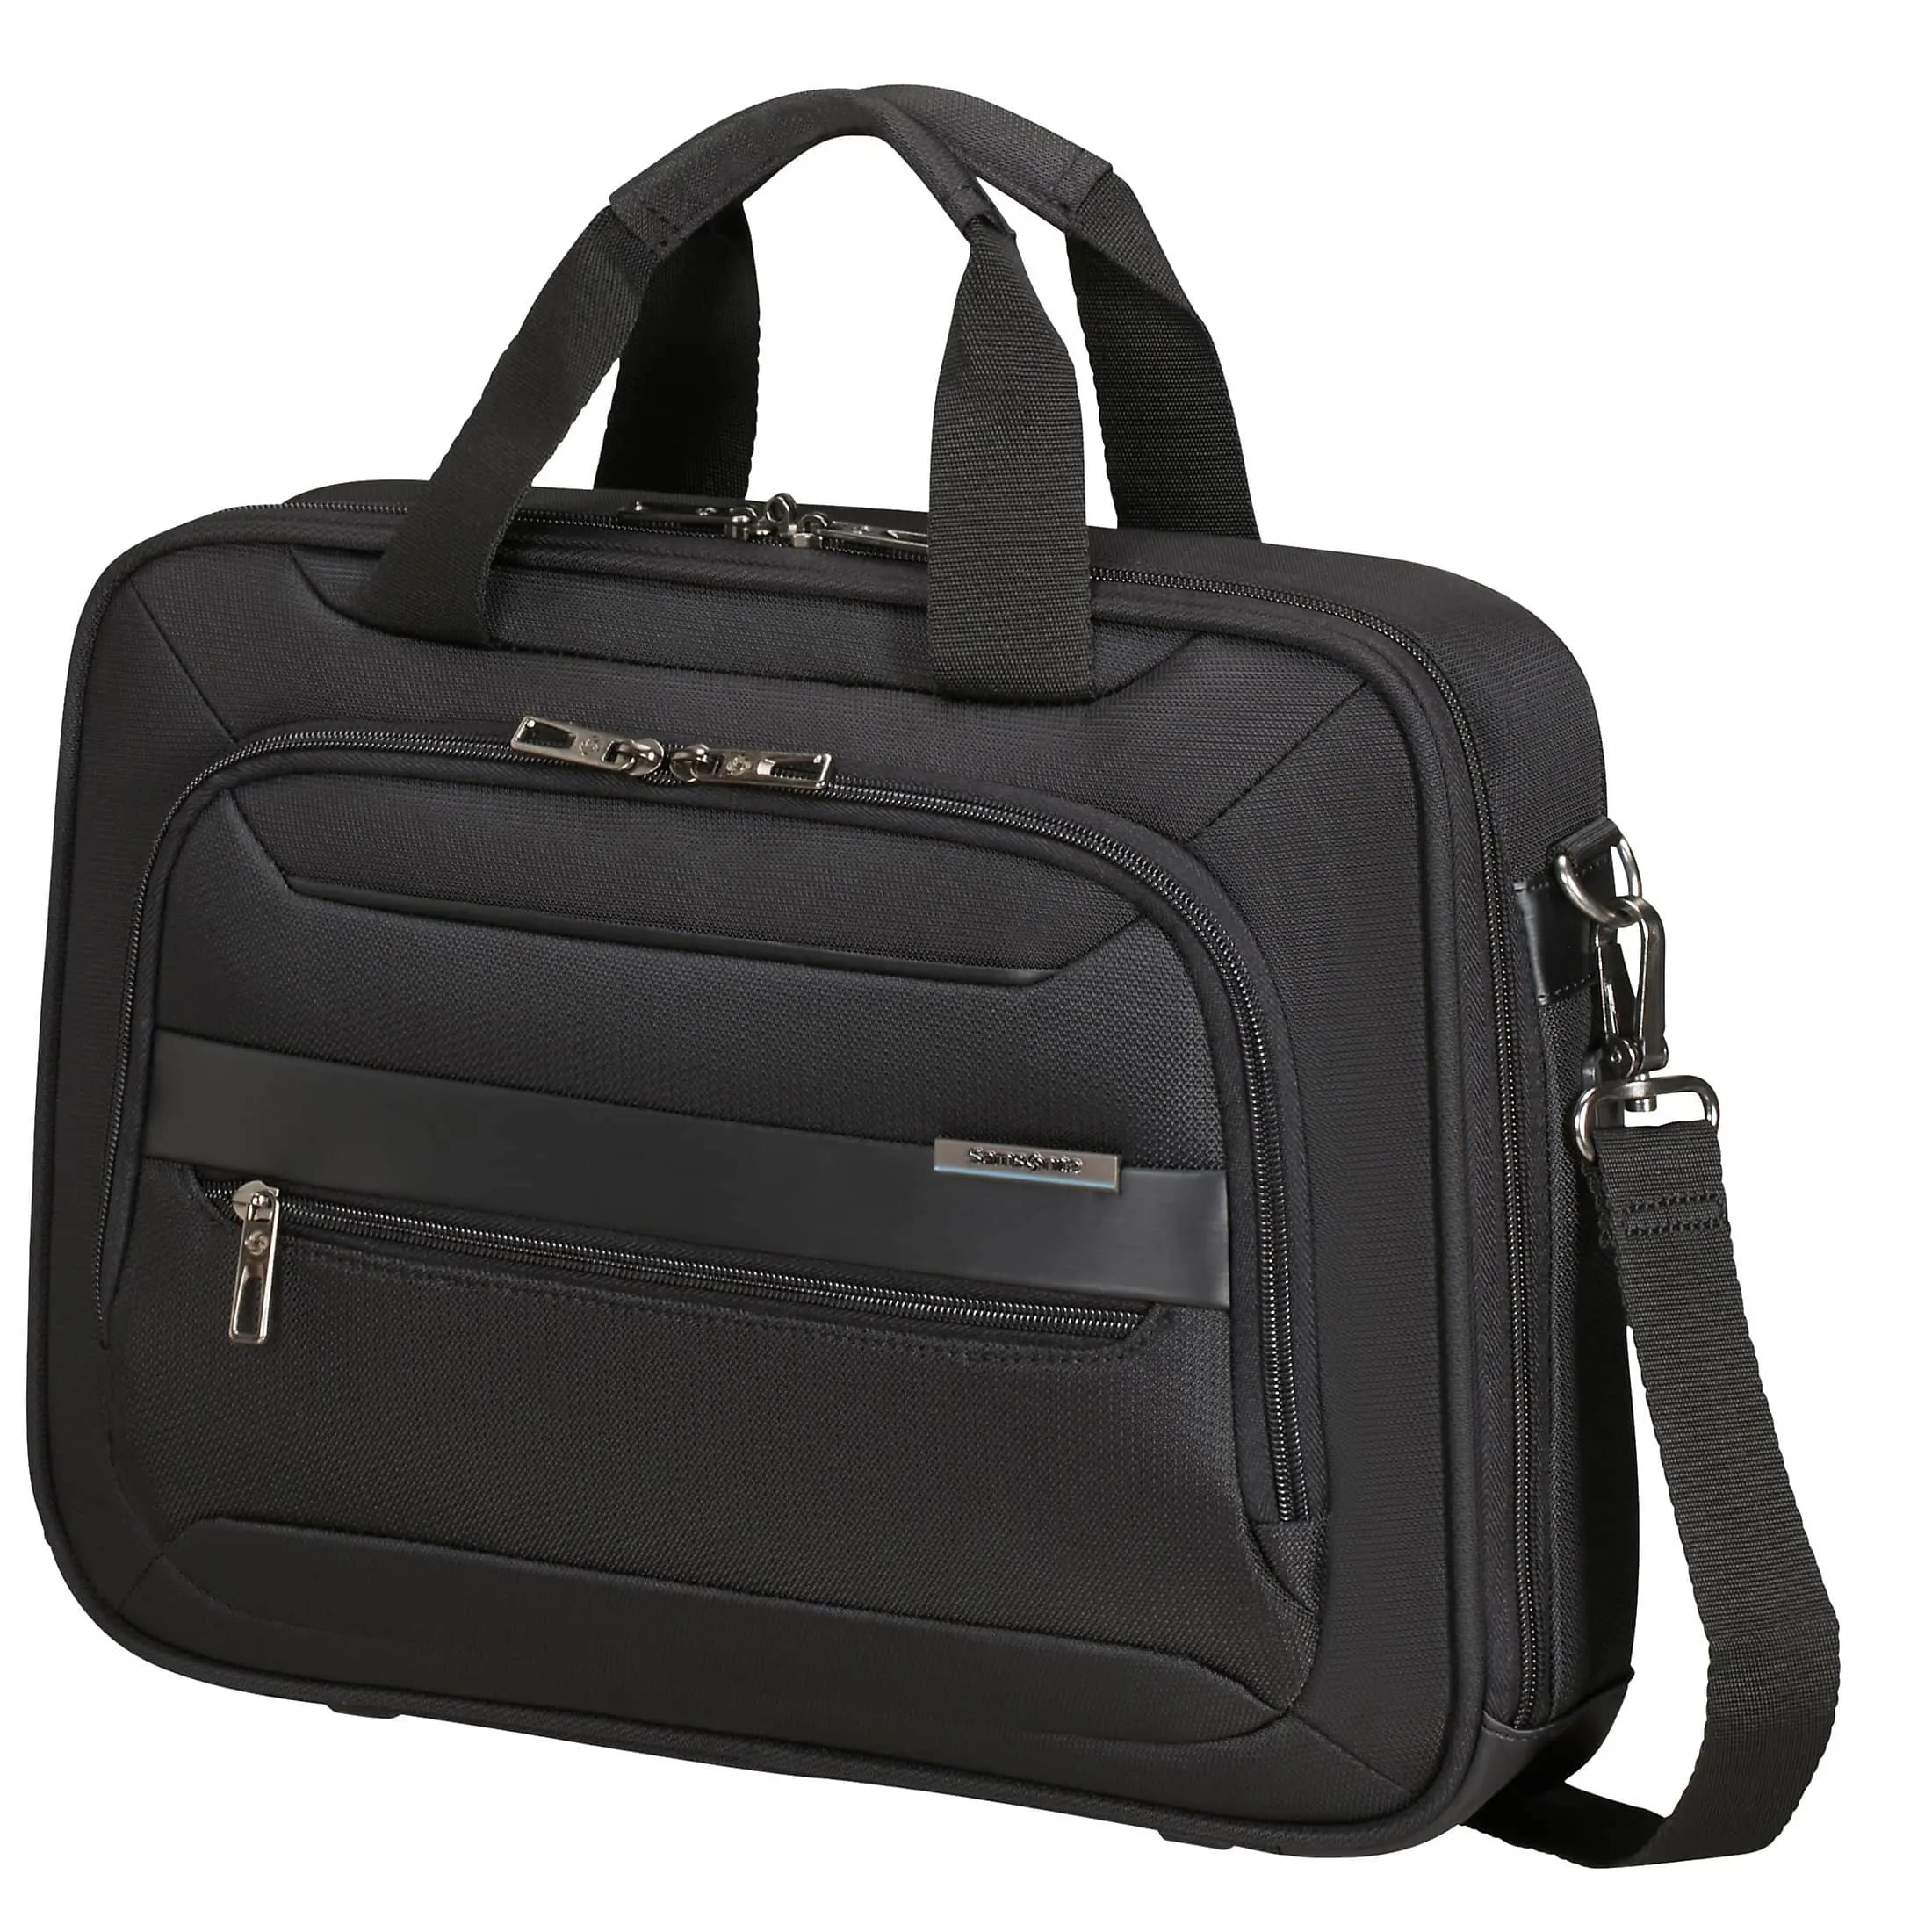 Samsonite Vectura Evo briefcase 37 cm - black